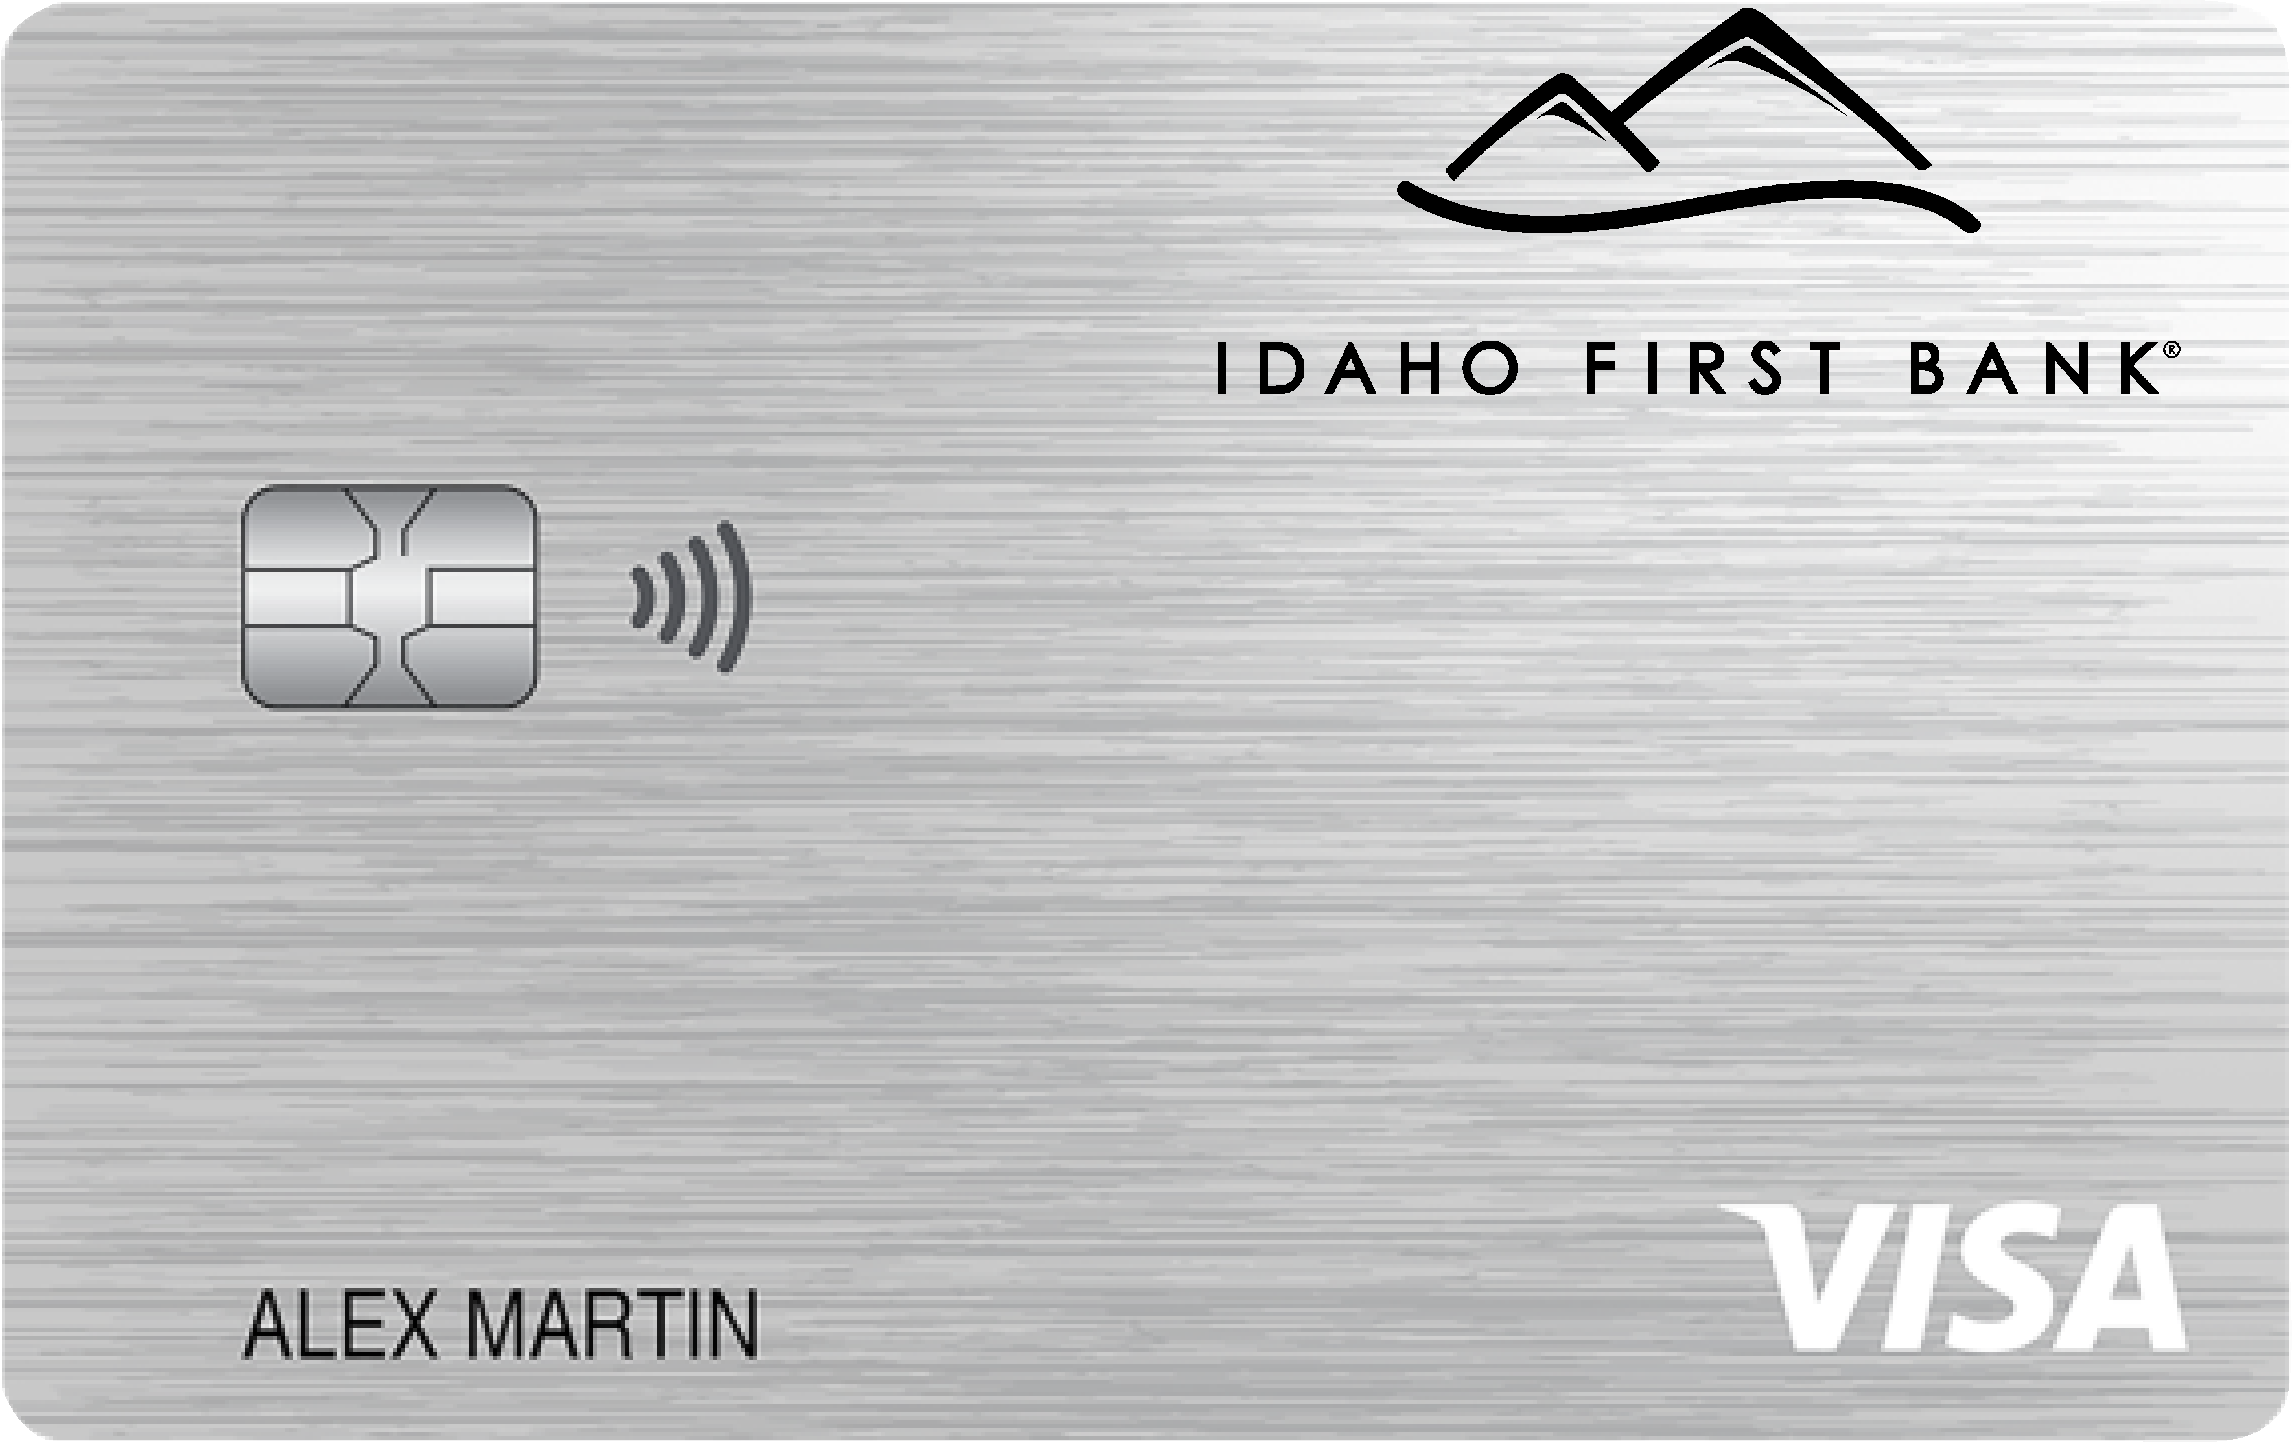 Idaho First Bank